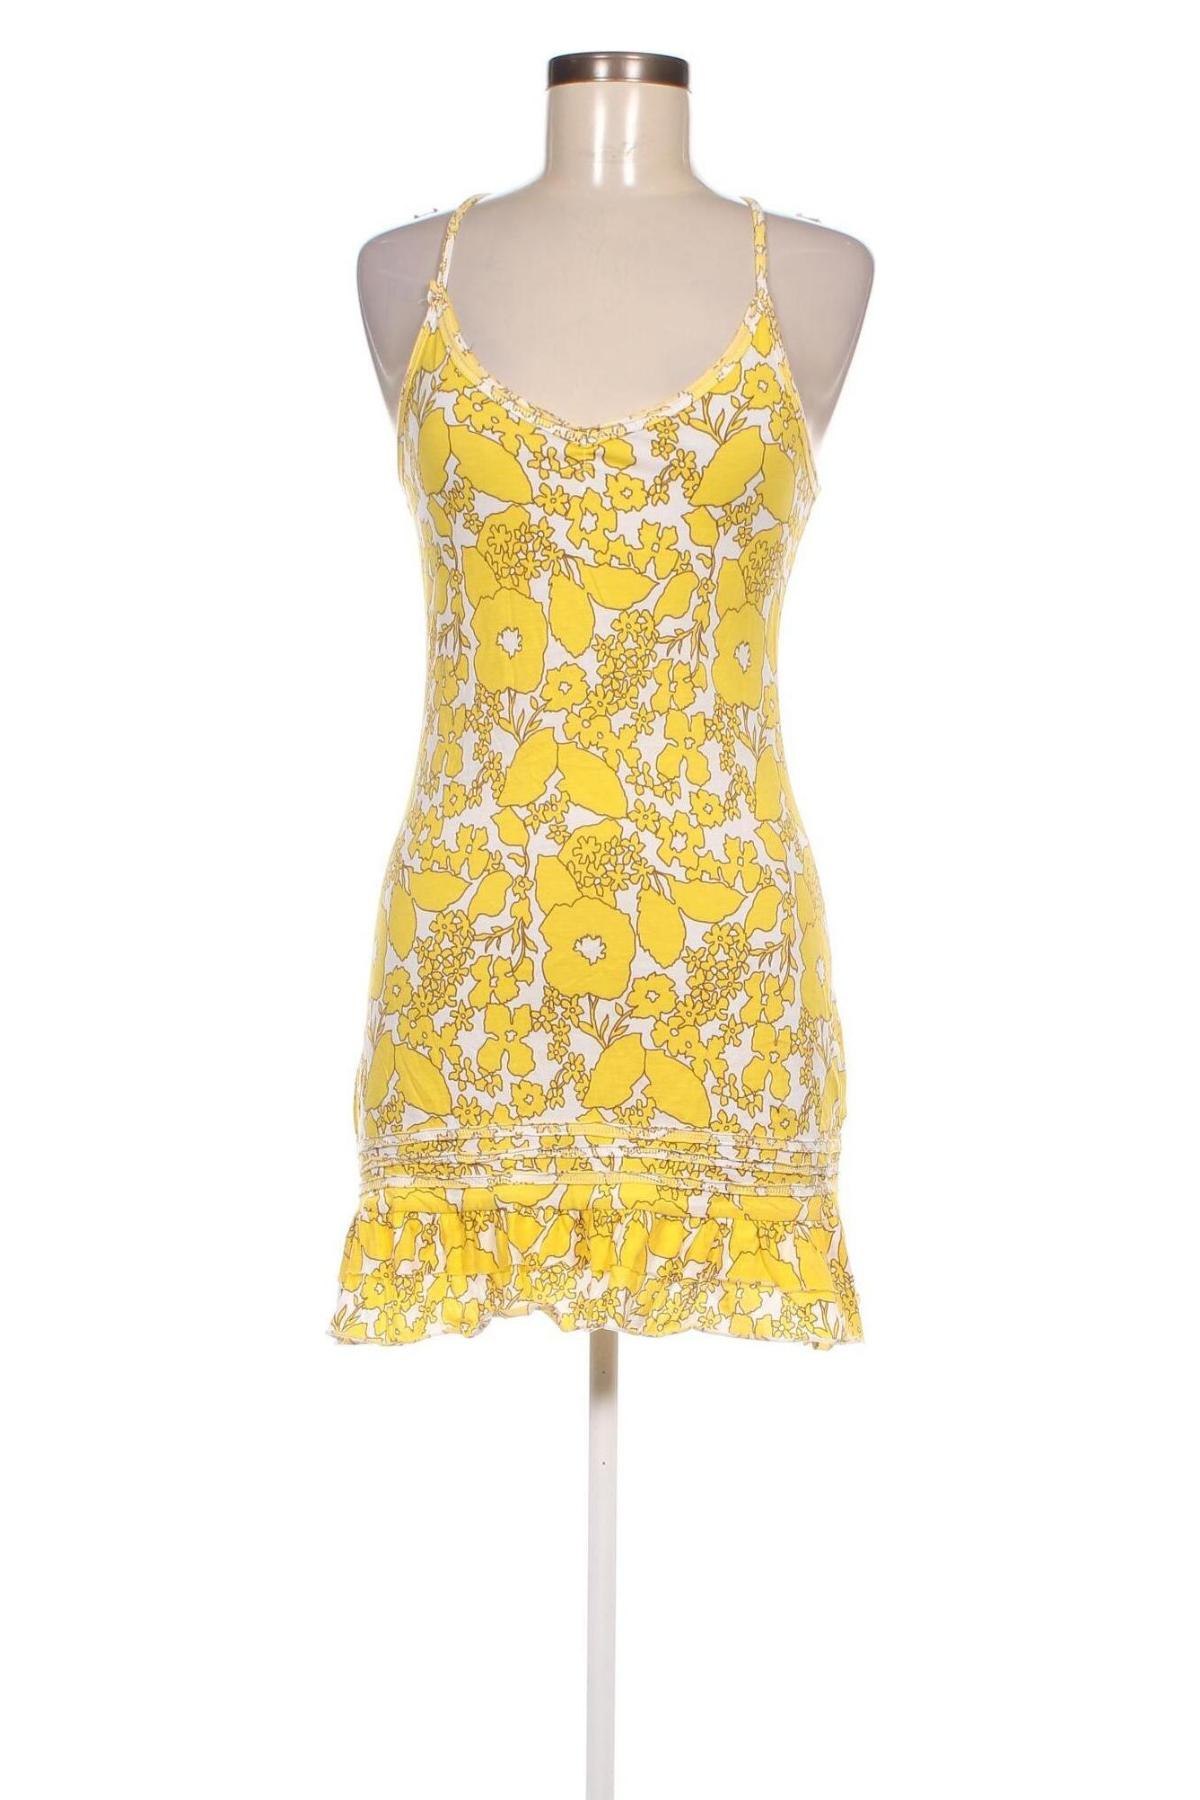 Φόρεμα Tally Weijl, Μέγεθος M, Χρώμα Πολύχρωμο, Τιμή 1,66 €